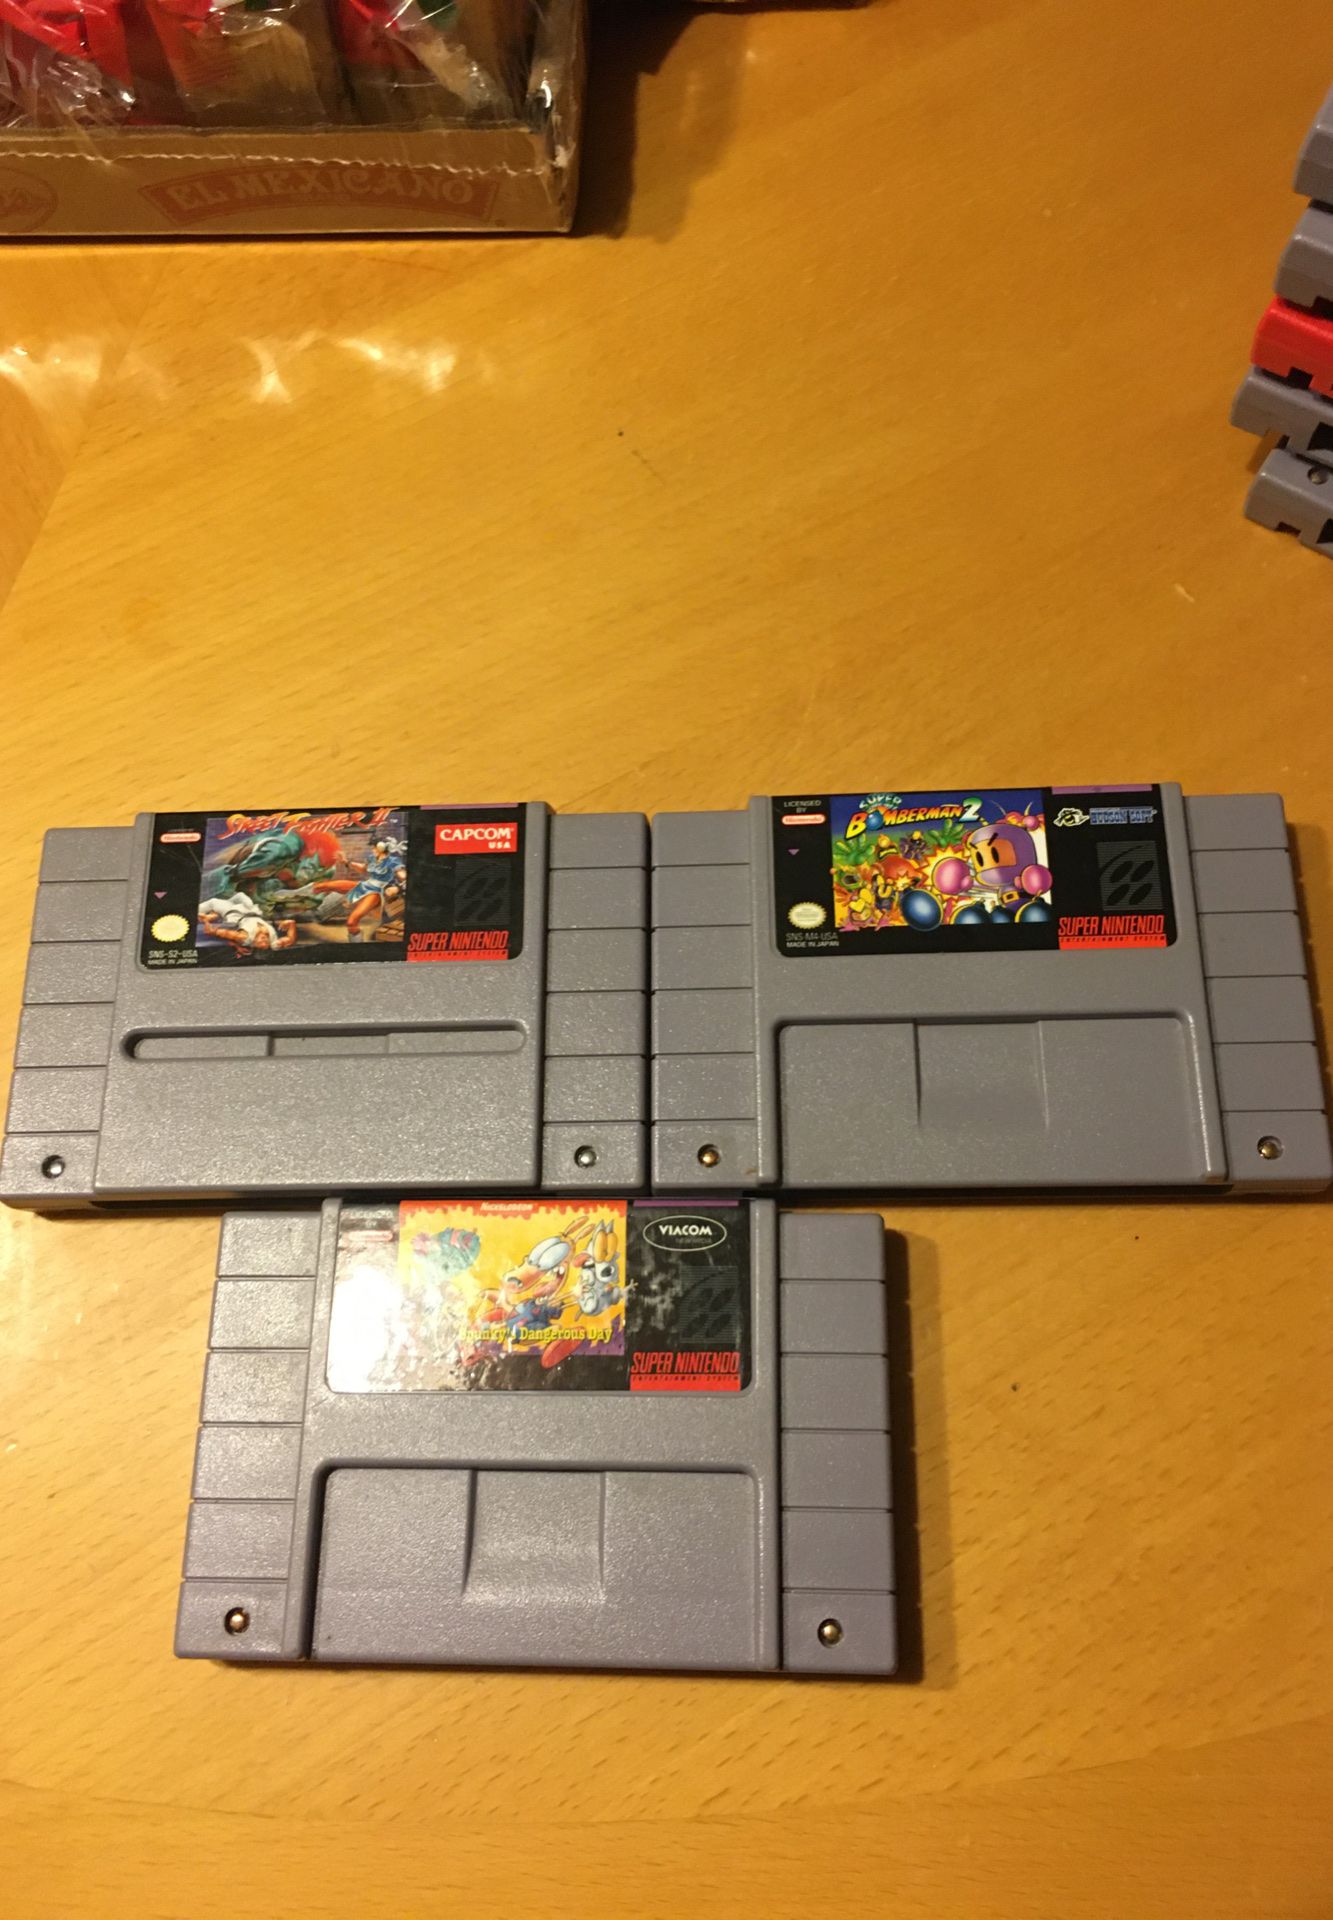 3 Super Nintendo games